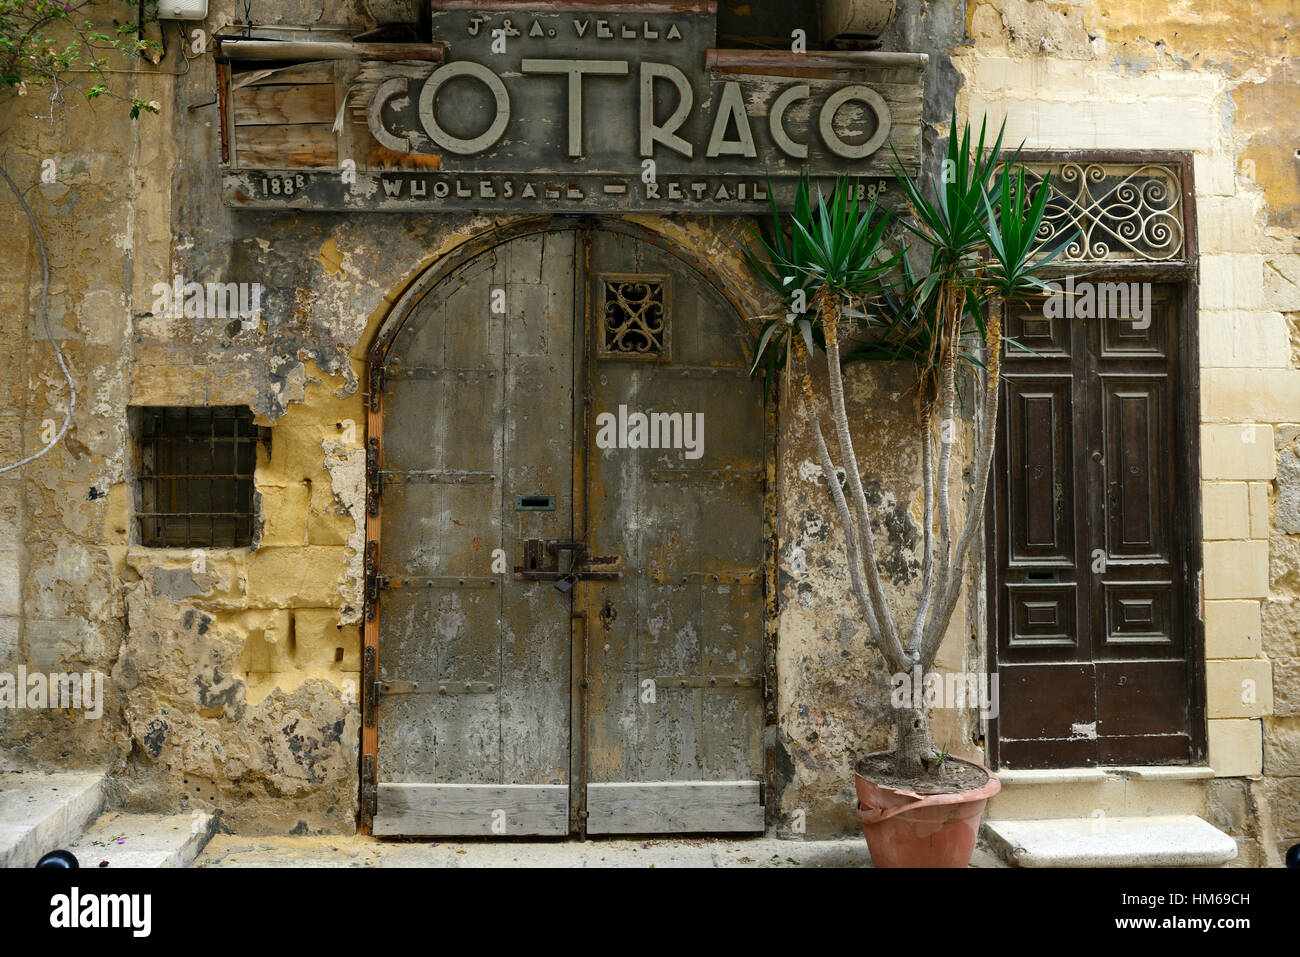 Cotraco alte Tür Tür aus Holz Holzgeschäft Eingang traditionellen alten Stil Shops Straßen Valletta Malta RM Welt Stockfoto